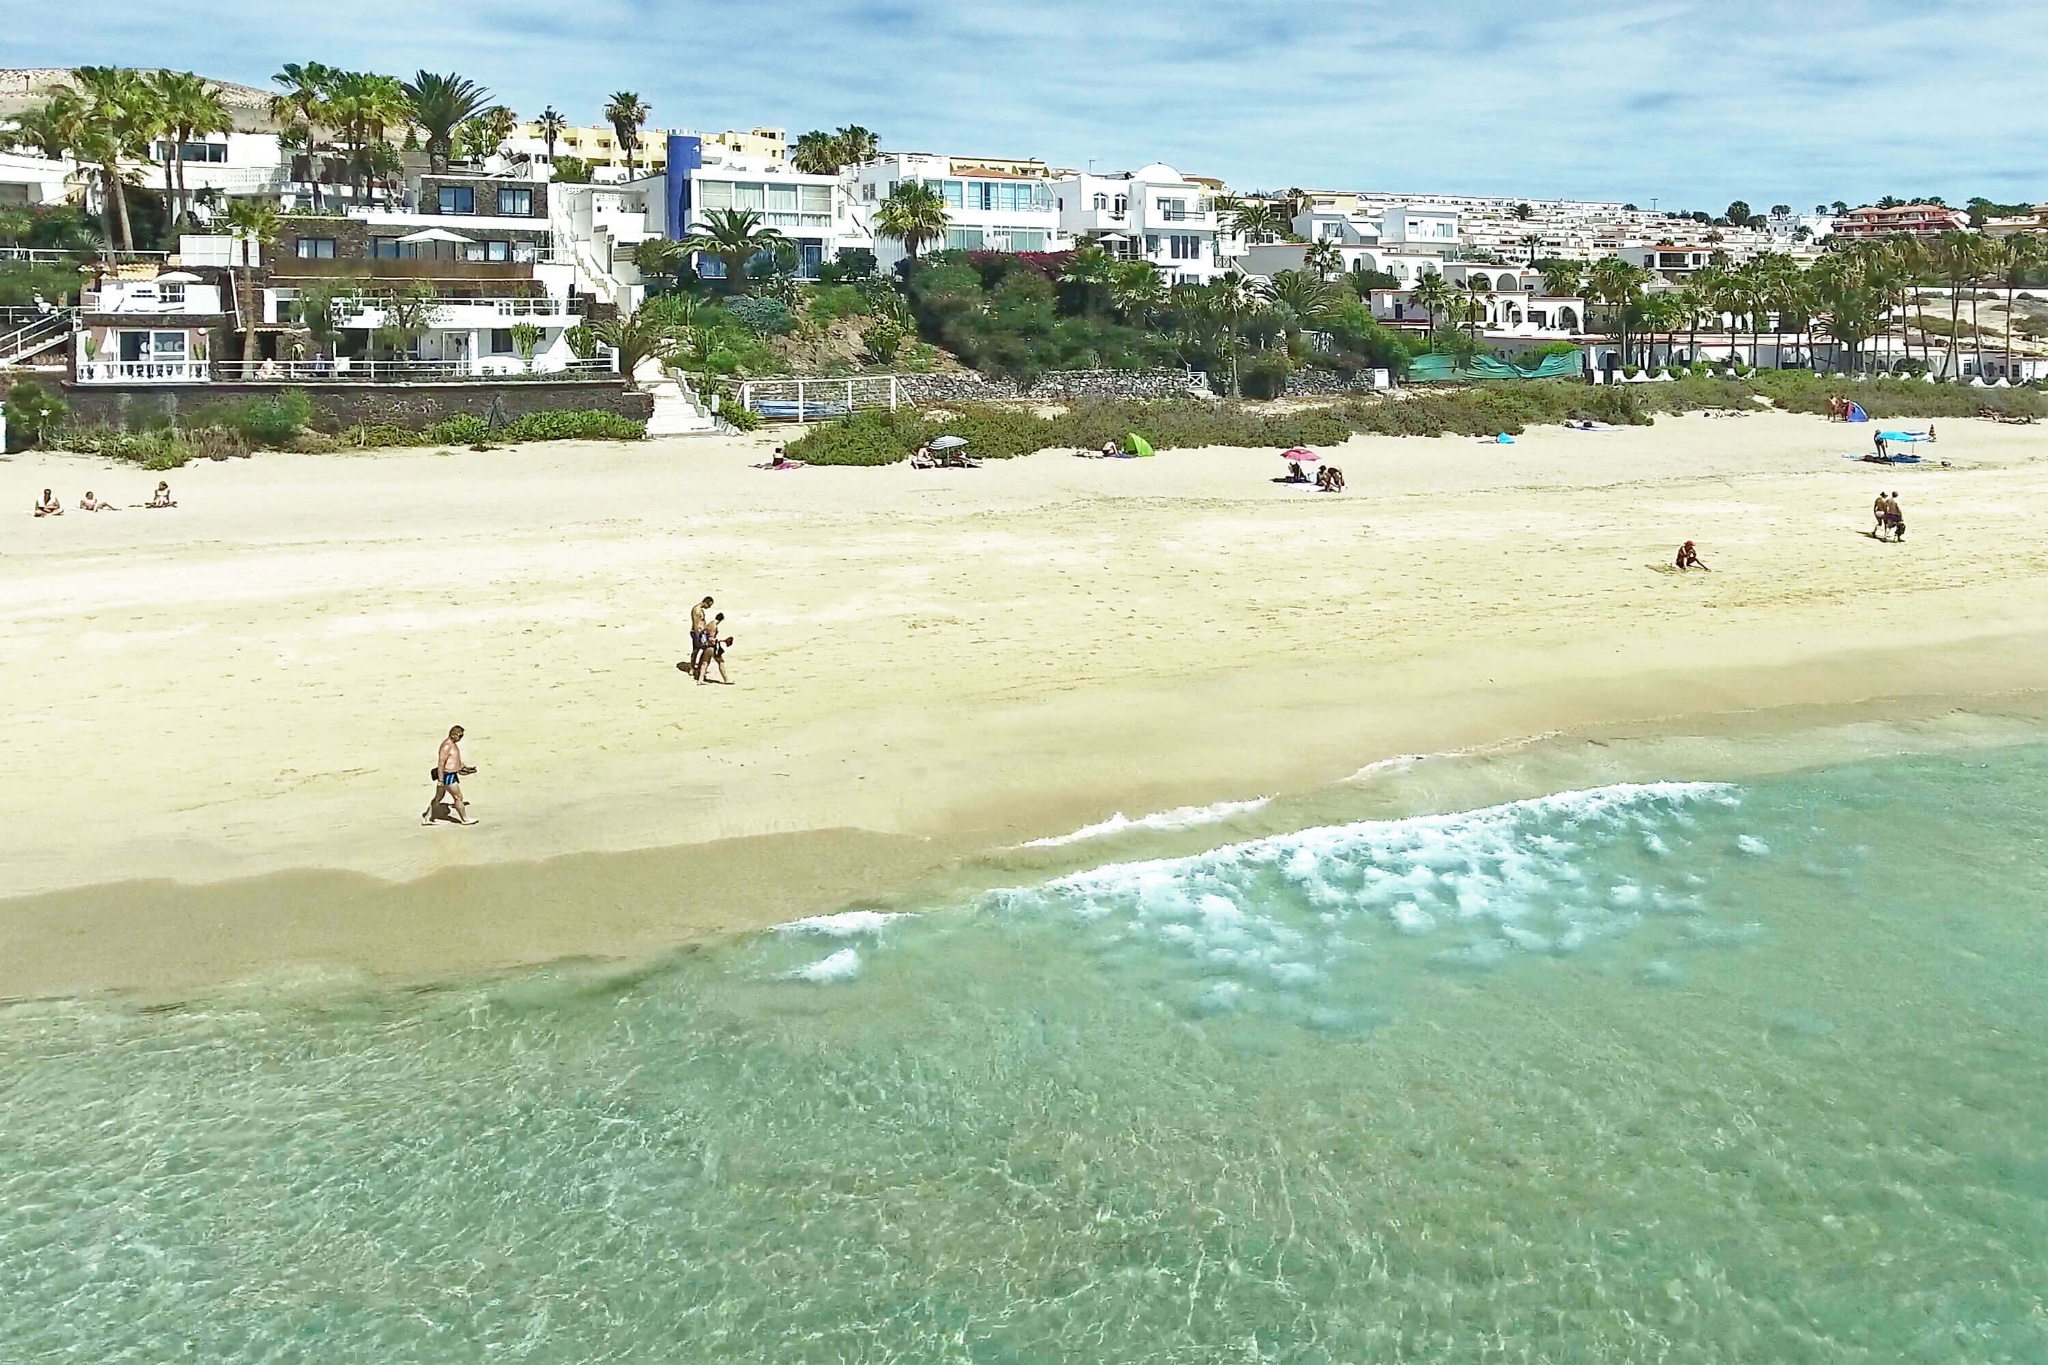 Appartement en premier lieu sur la plage de Costa Calma, idéal pour les activités nautiques sur la plage